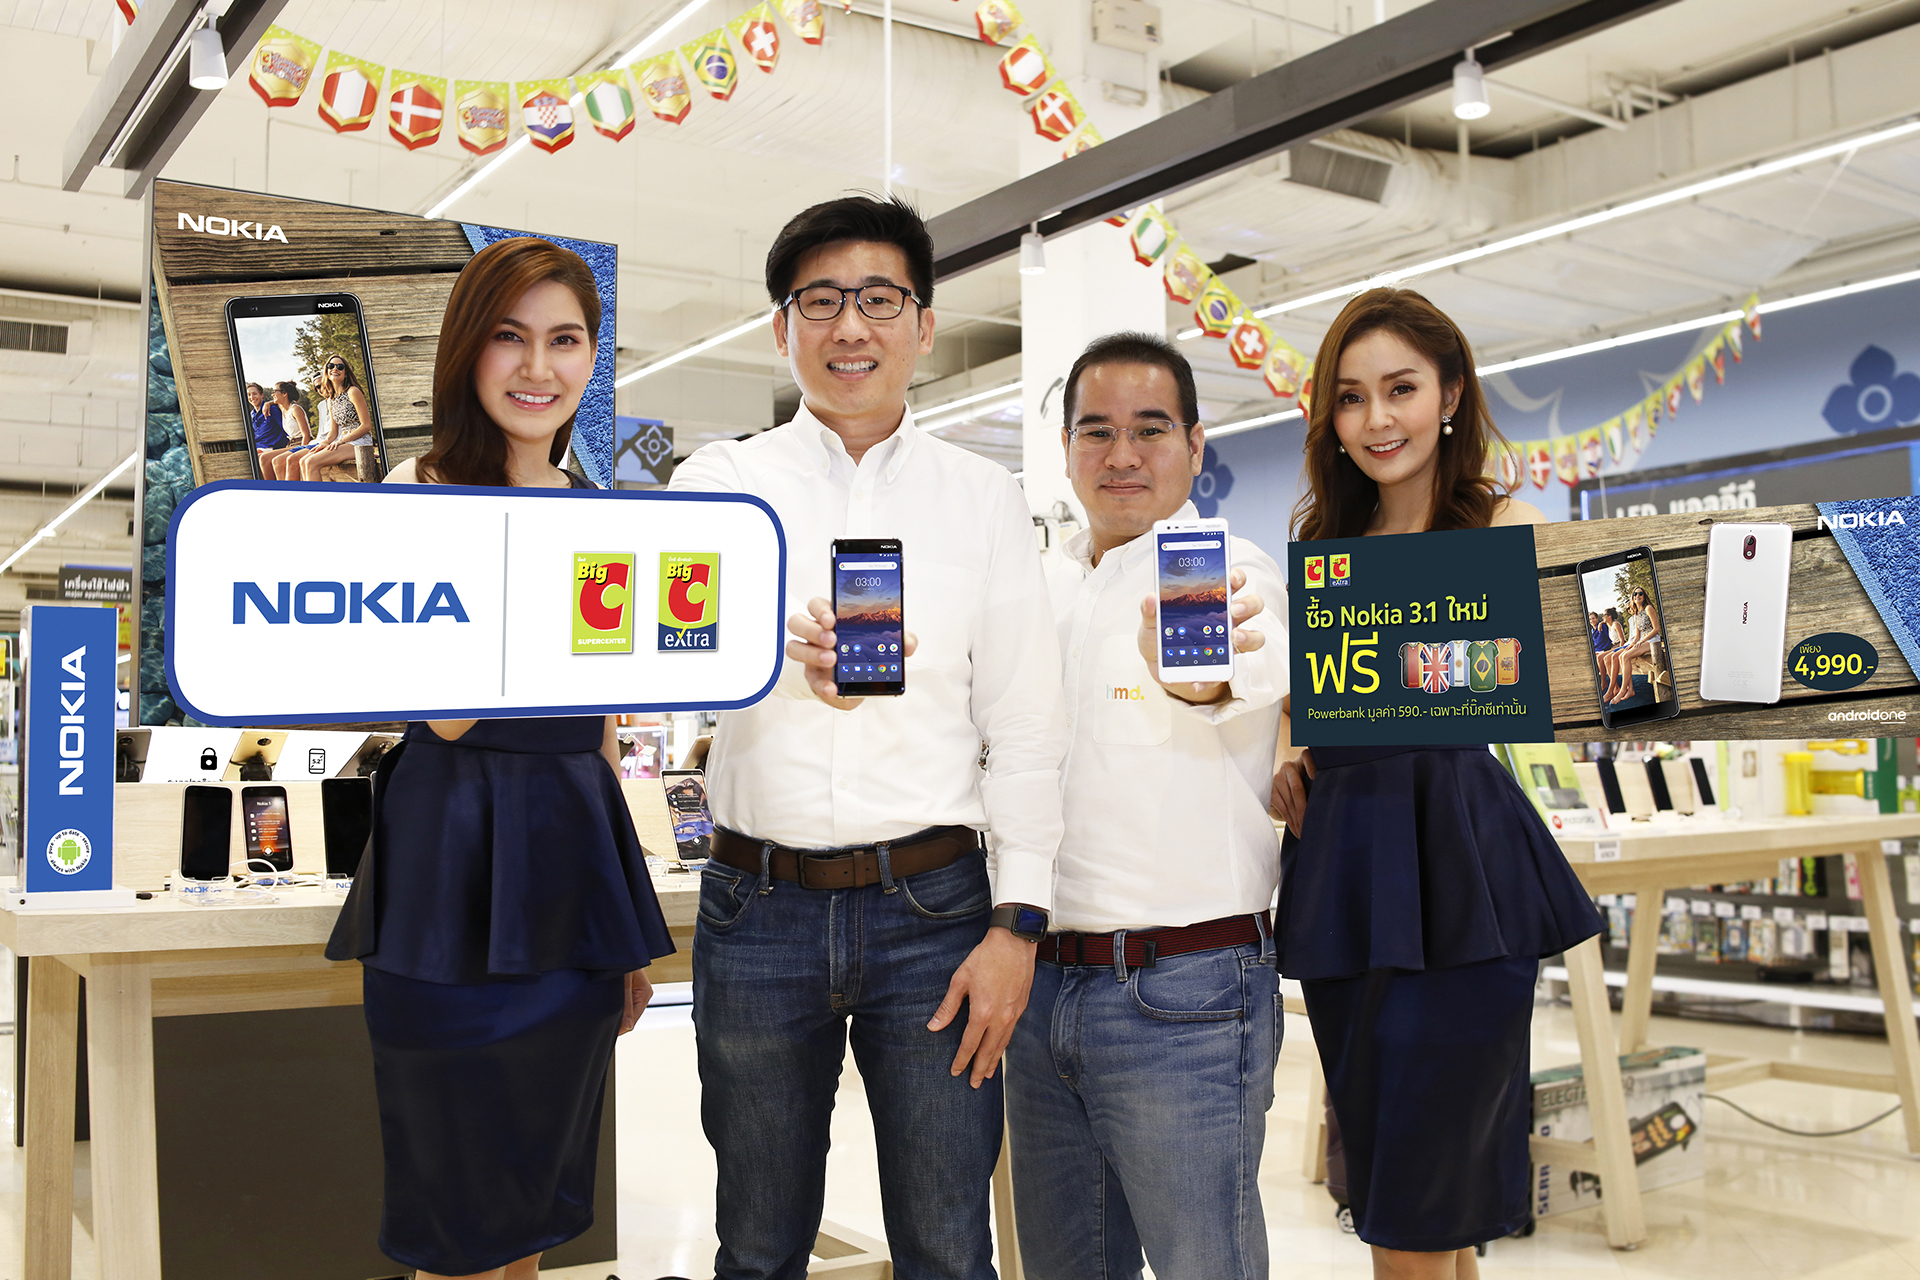 New Nokia 3.1 สมาร์ทโฟนดีไซน์สวย ตัวเครื่องโดดเด่น พร้อมวางจำหน่ายในไทยแล้ว!!!